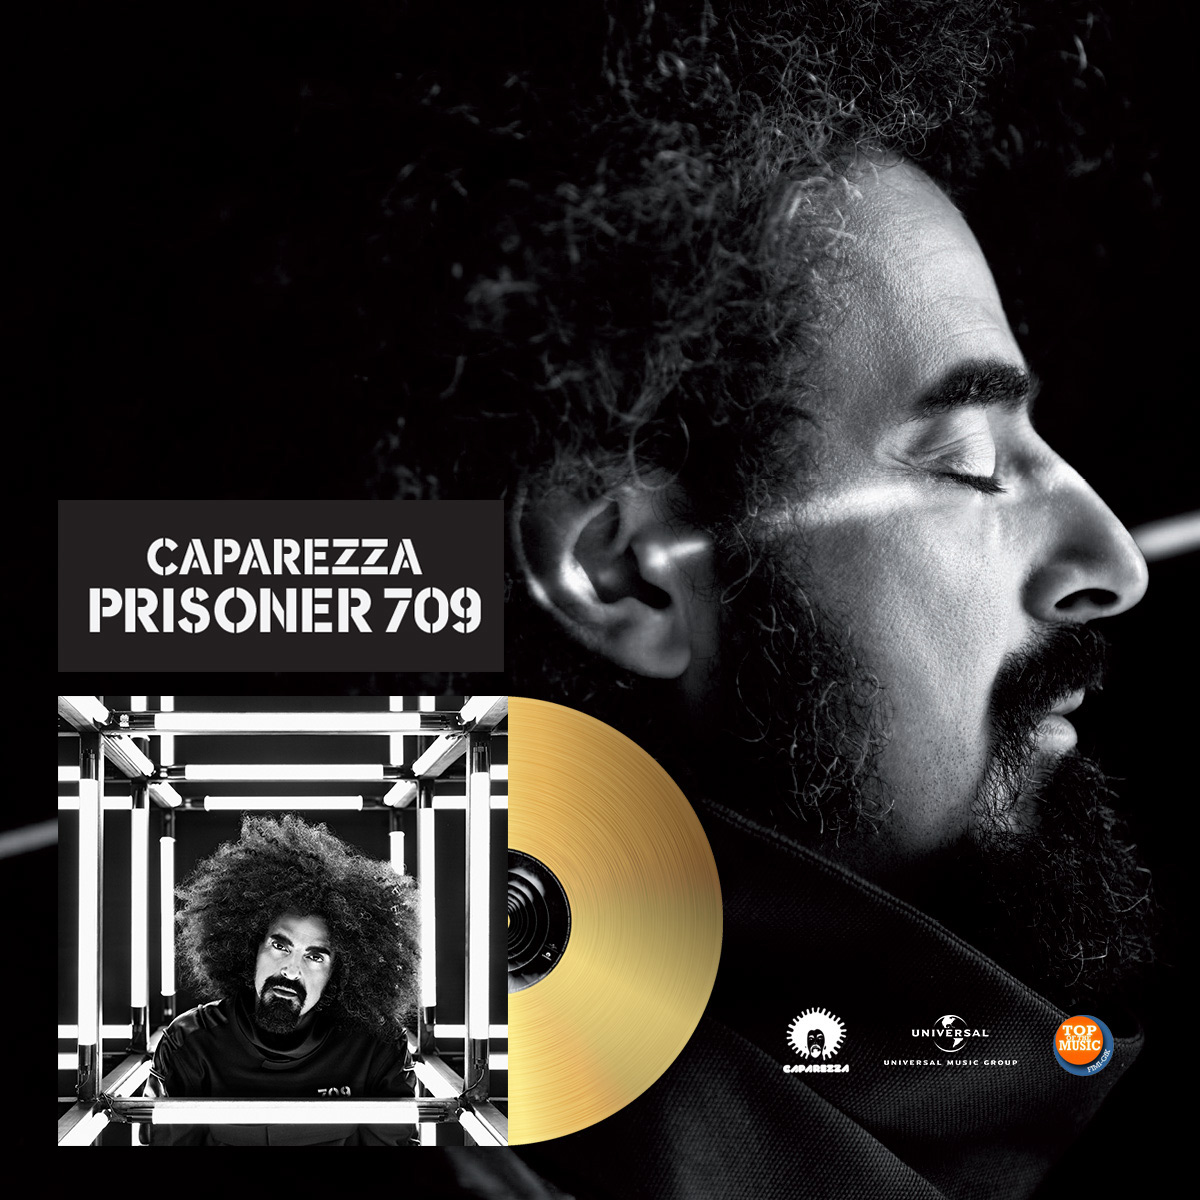 CAPAREZZA: l’album “Prisoner 709” certificato oro a una settimana dalla pubblicazione